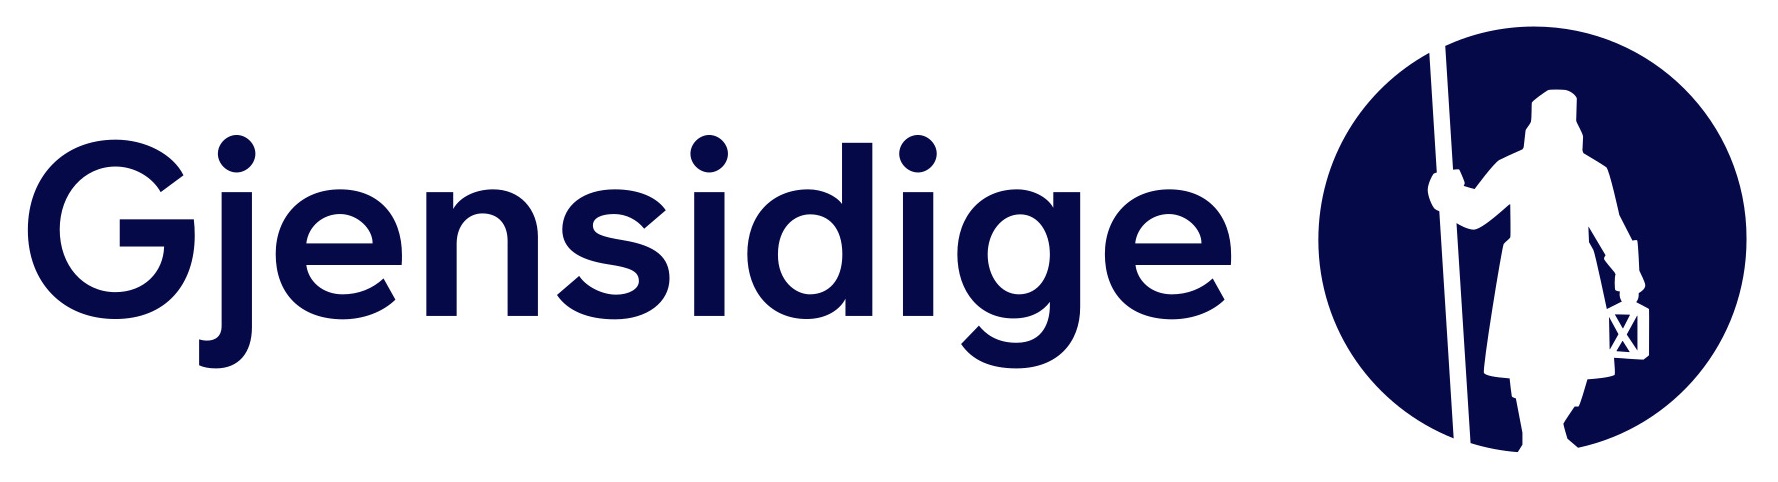 Gjensidige_Main-Logo_Digital_Blue (1).jpg